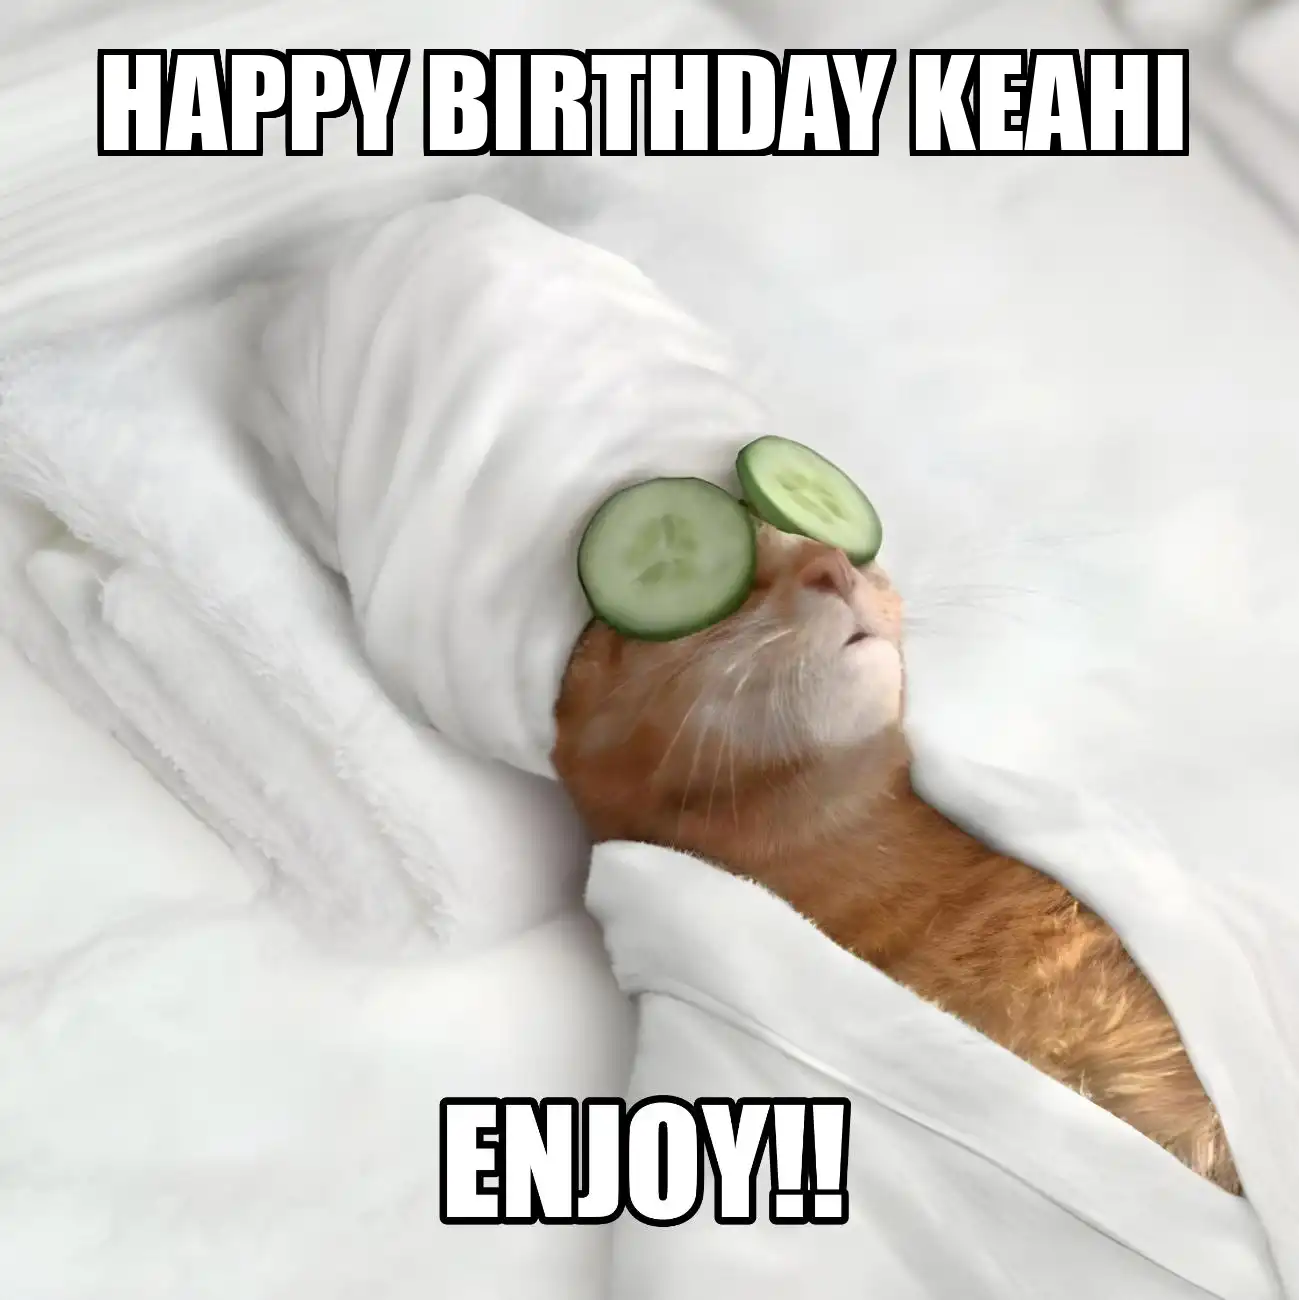 Happy Birthday Keahi Enjoy Cat Meme